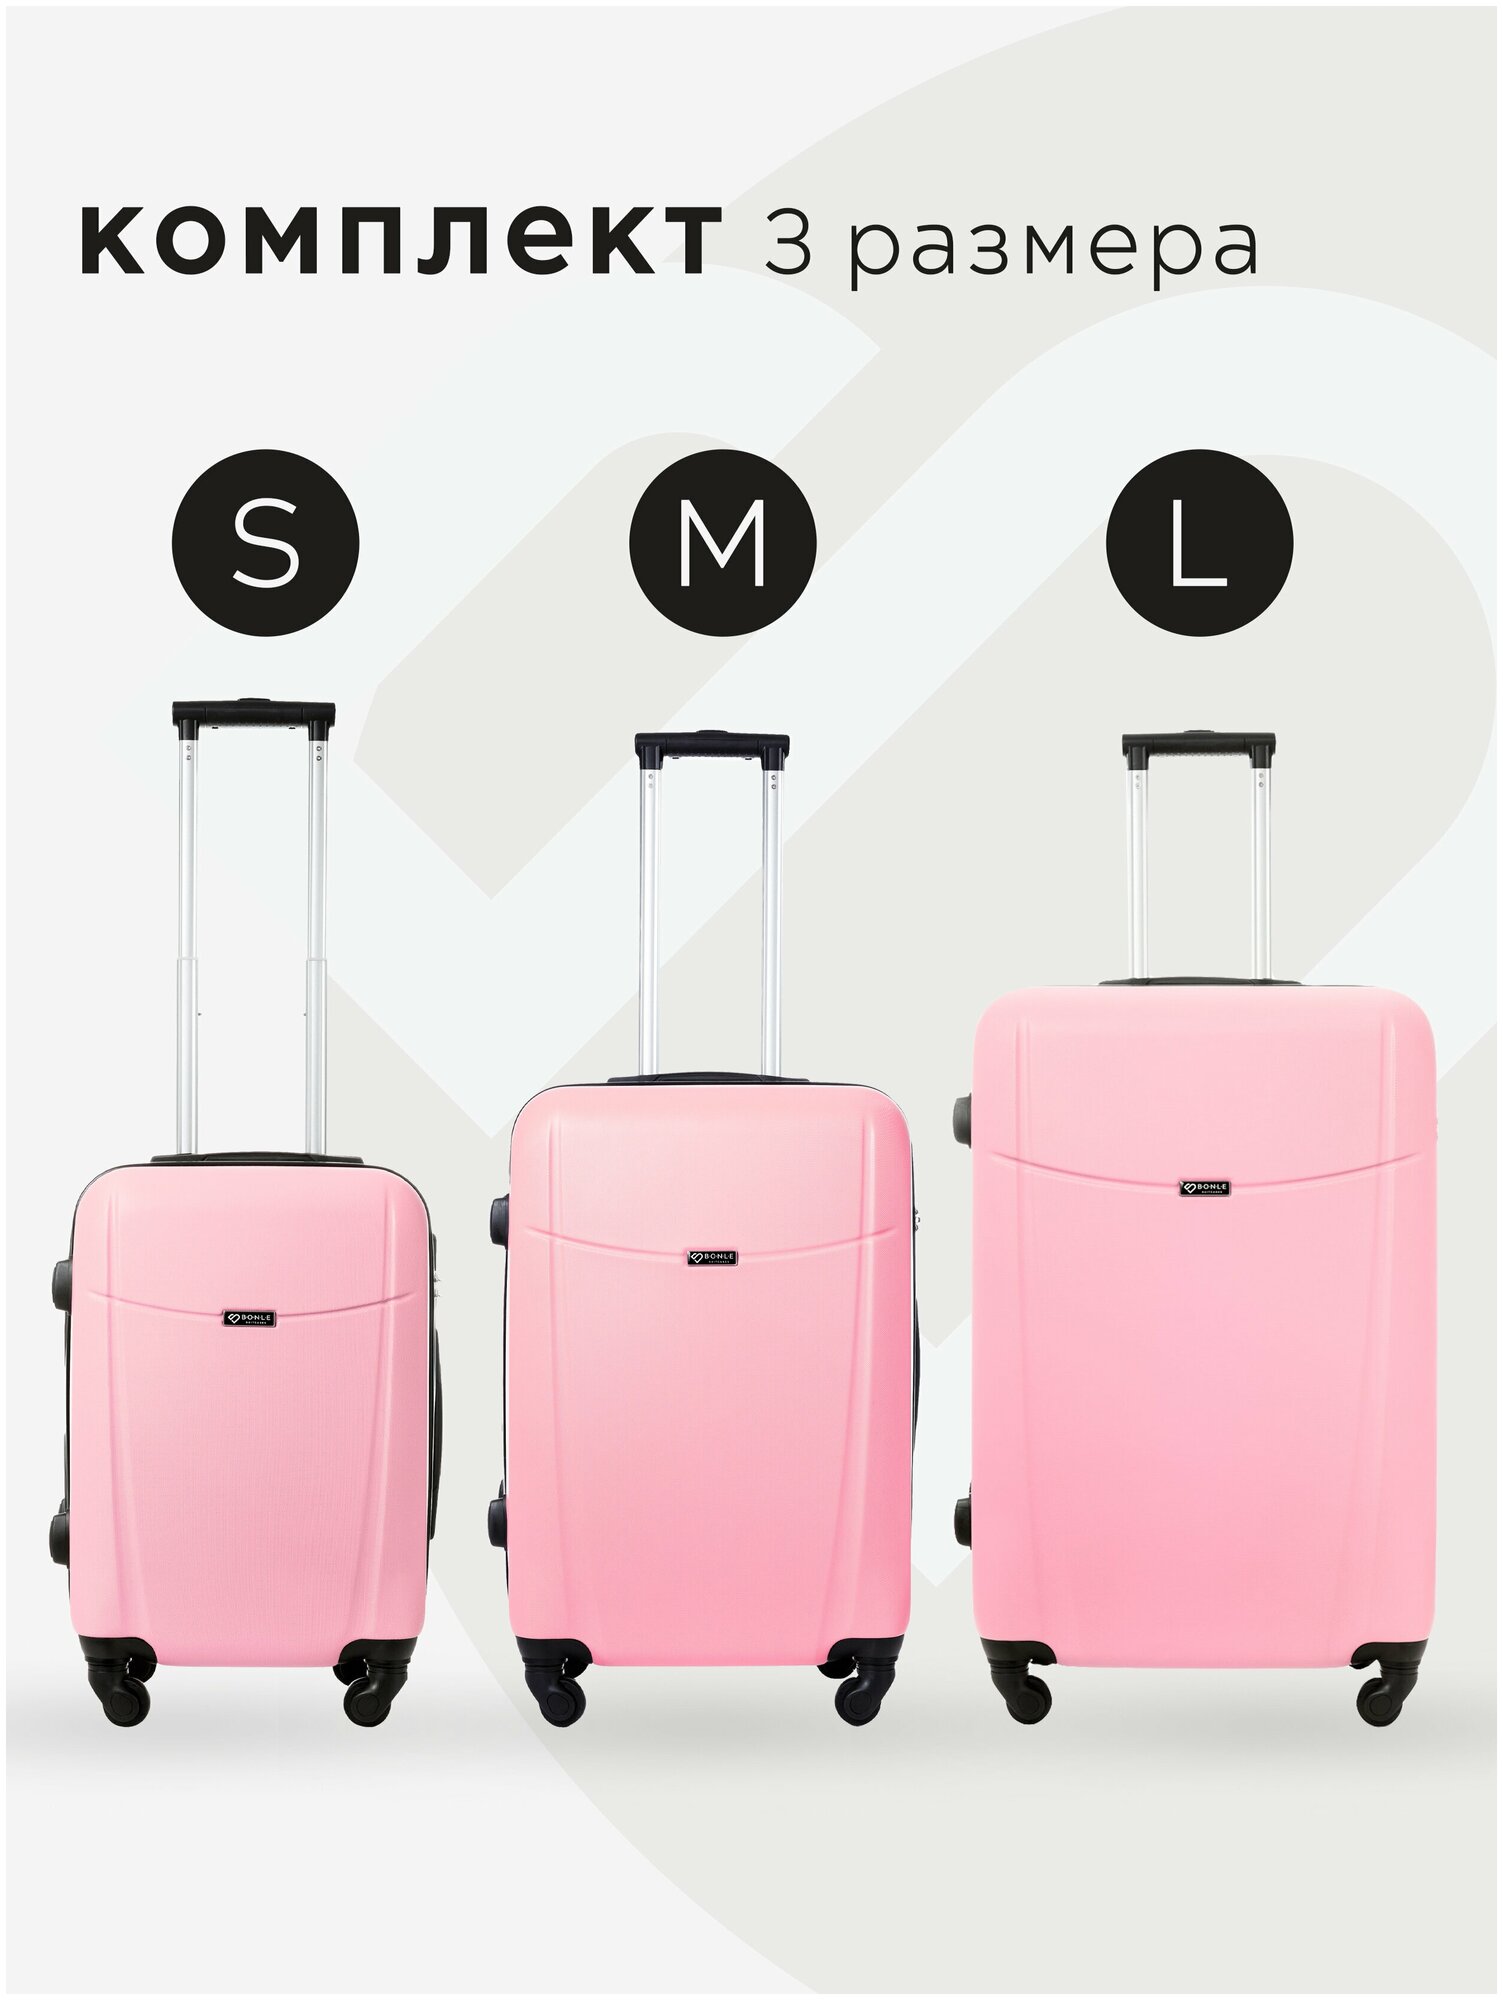 Комплект чемоданов 3шт, Тасмания, Нежно-розовый, размер L,M,S маленький, средний, большой, ручная кладь, дорожный, не тканевый